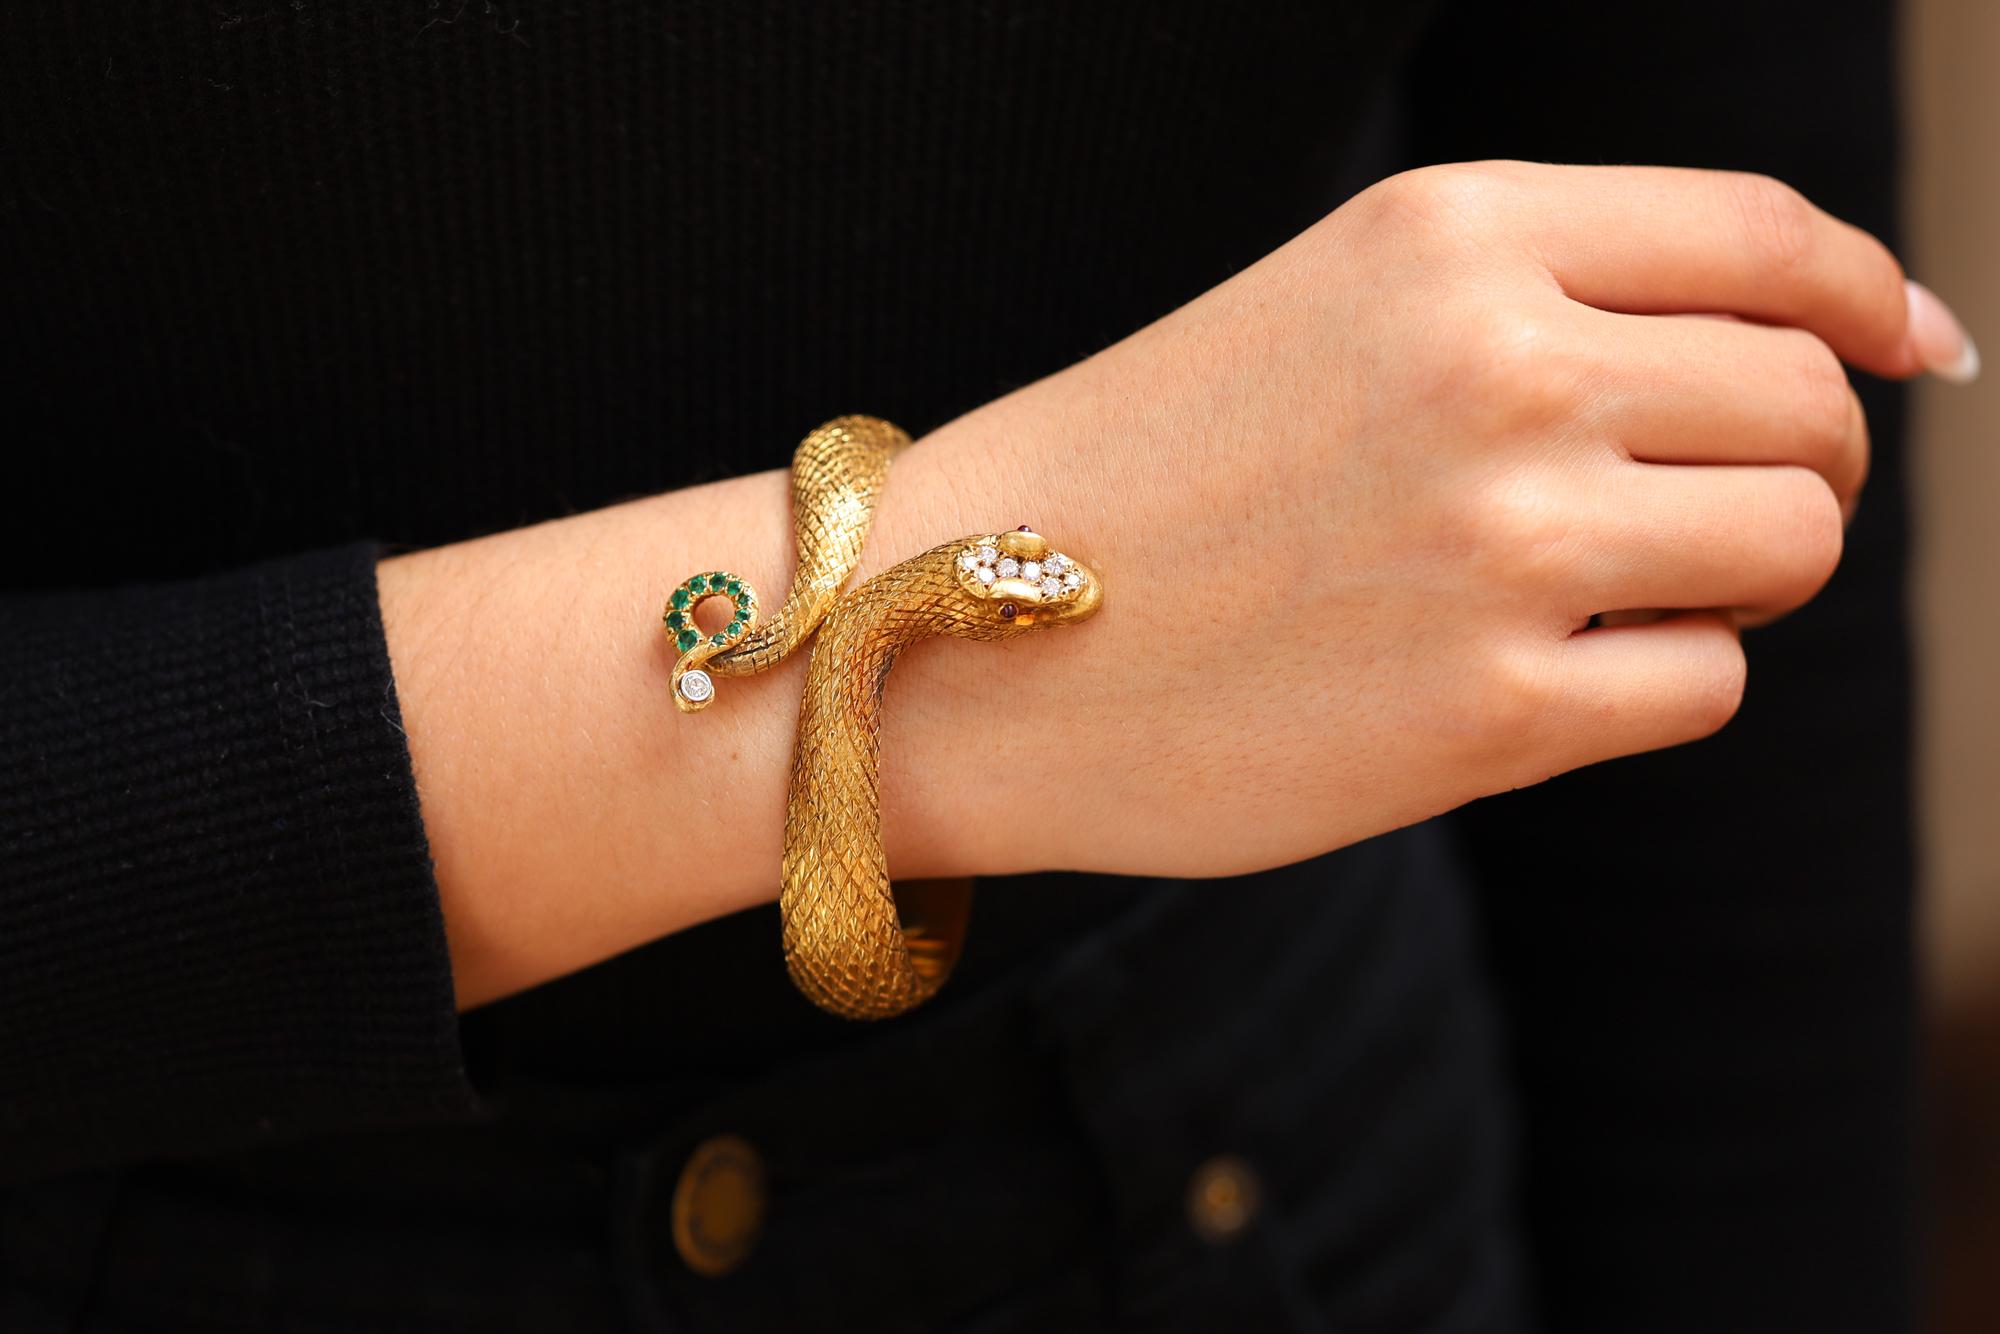 Réalisé en or jaune 18 carats, cet exquis bracelet signé Cellino Estate présente un serpent vivant aux écailles méticuleusement gravées et texturées à la main. La tête est ornée de diamants ronds brillants presque incolores, tandis que les yeux